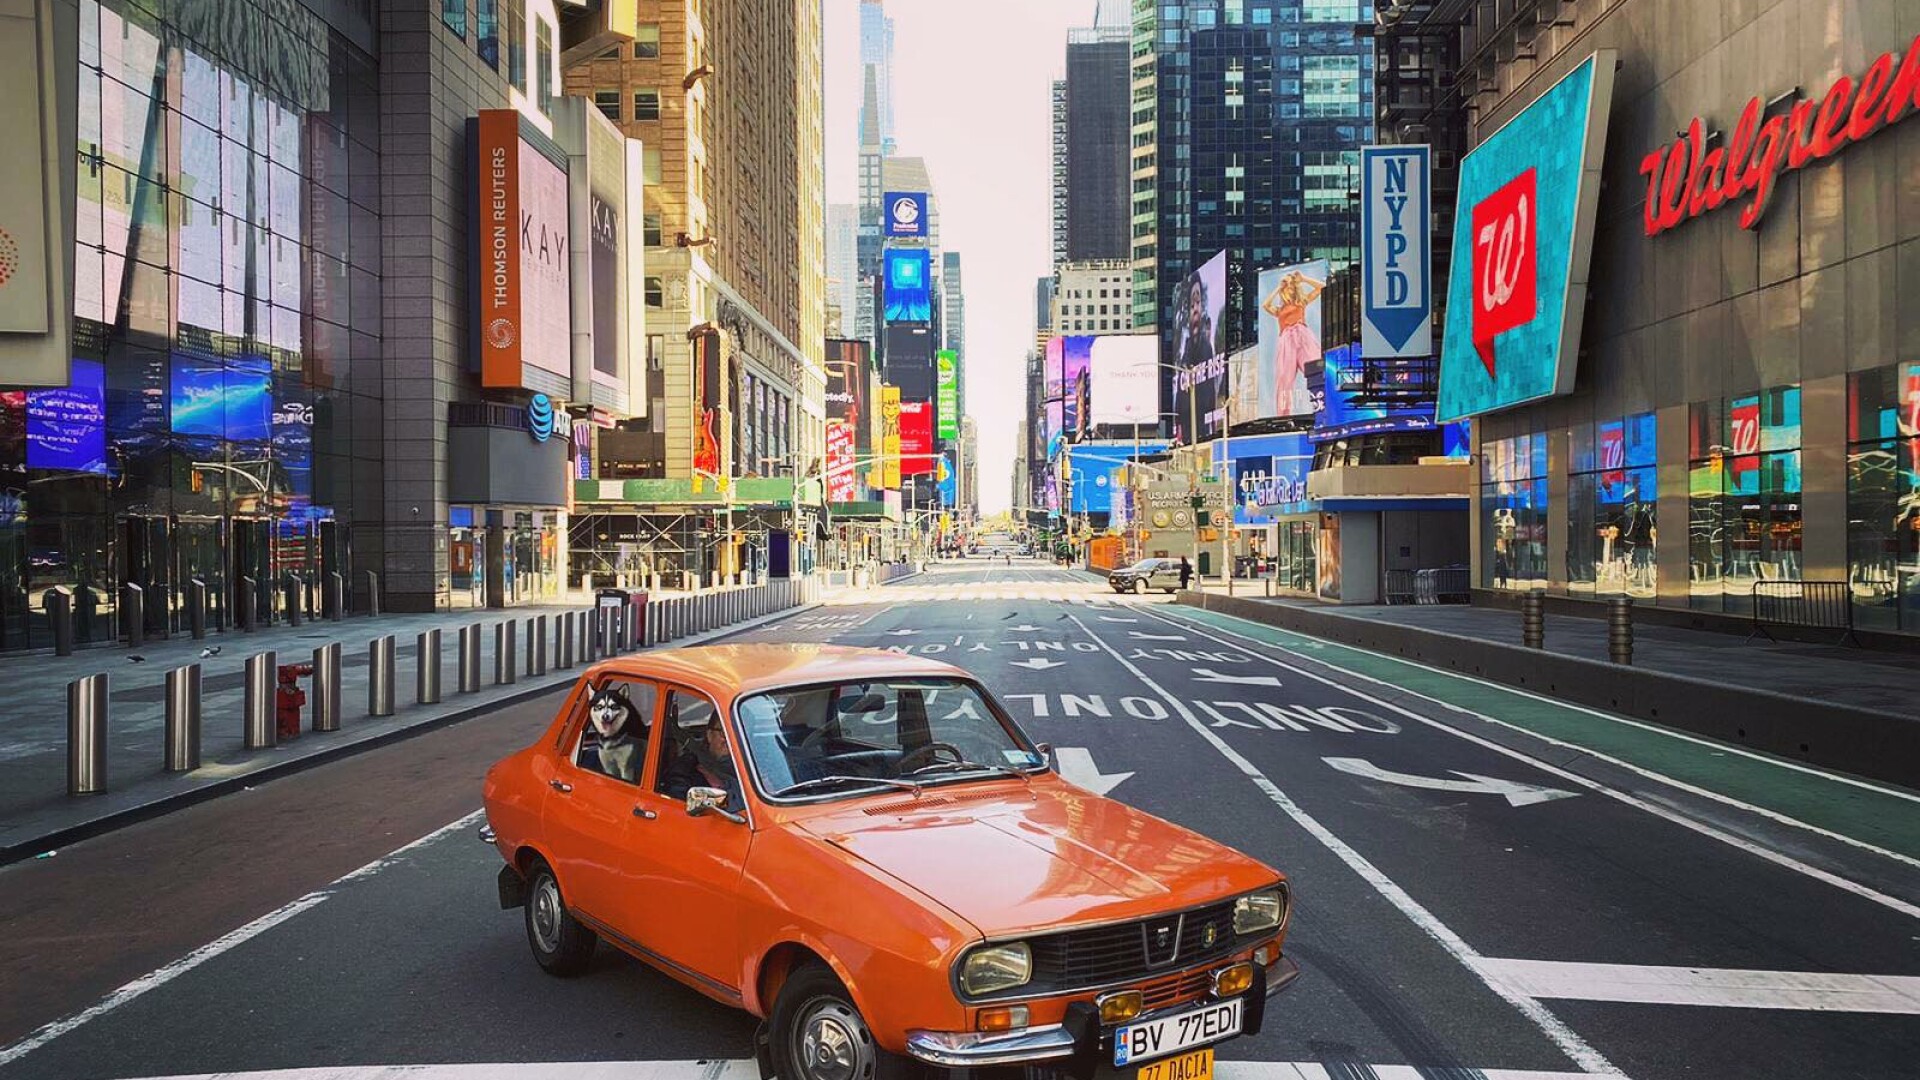 Imagini unice: cu Dacia 1300 la plimbare printr-un New York pustiit de coronavirus